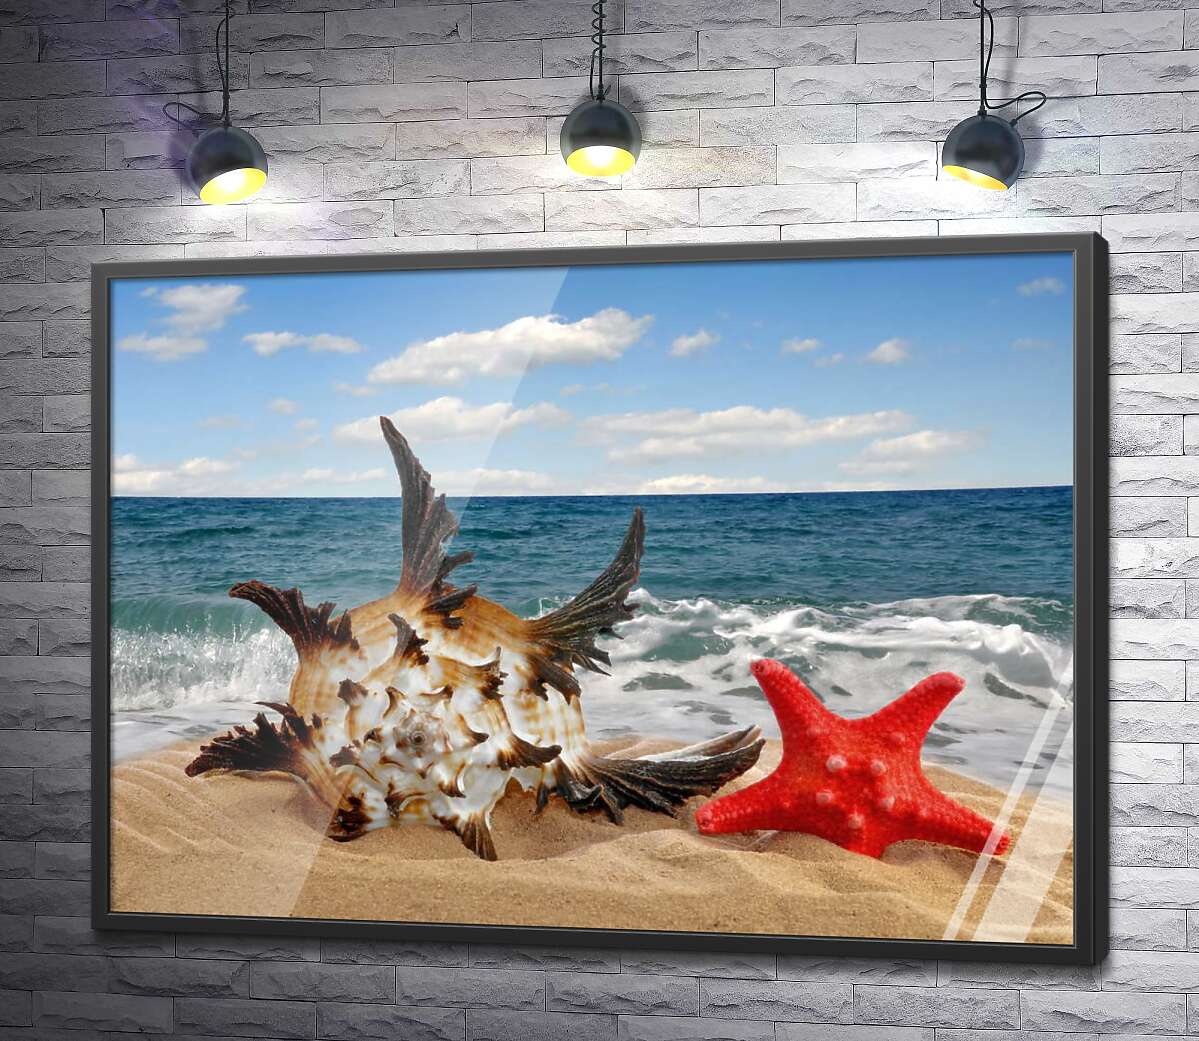 постер Нежная ракушка, с острыми концами, и красная морская звезда зарылись в пляжный песок